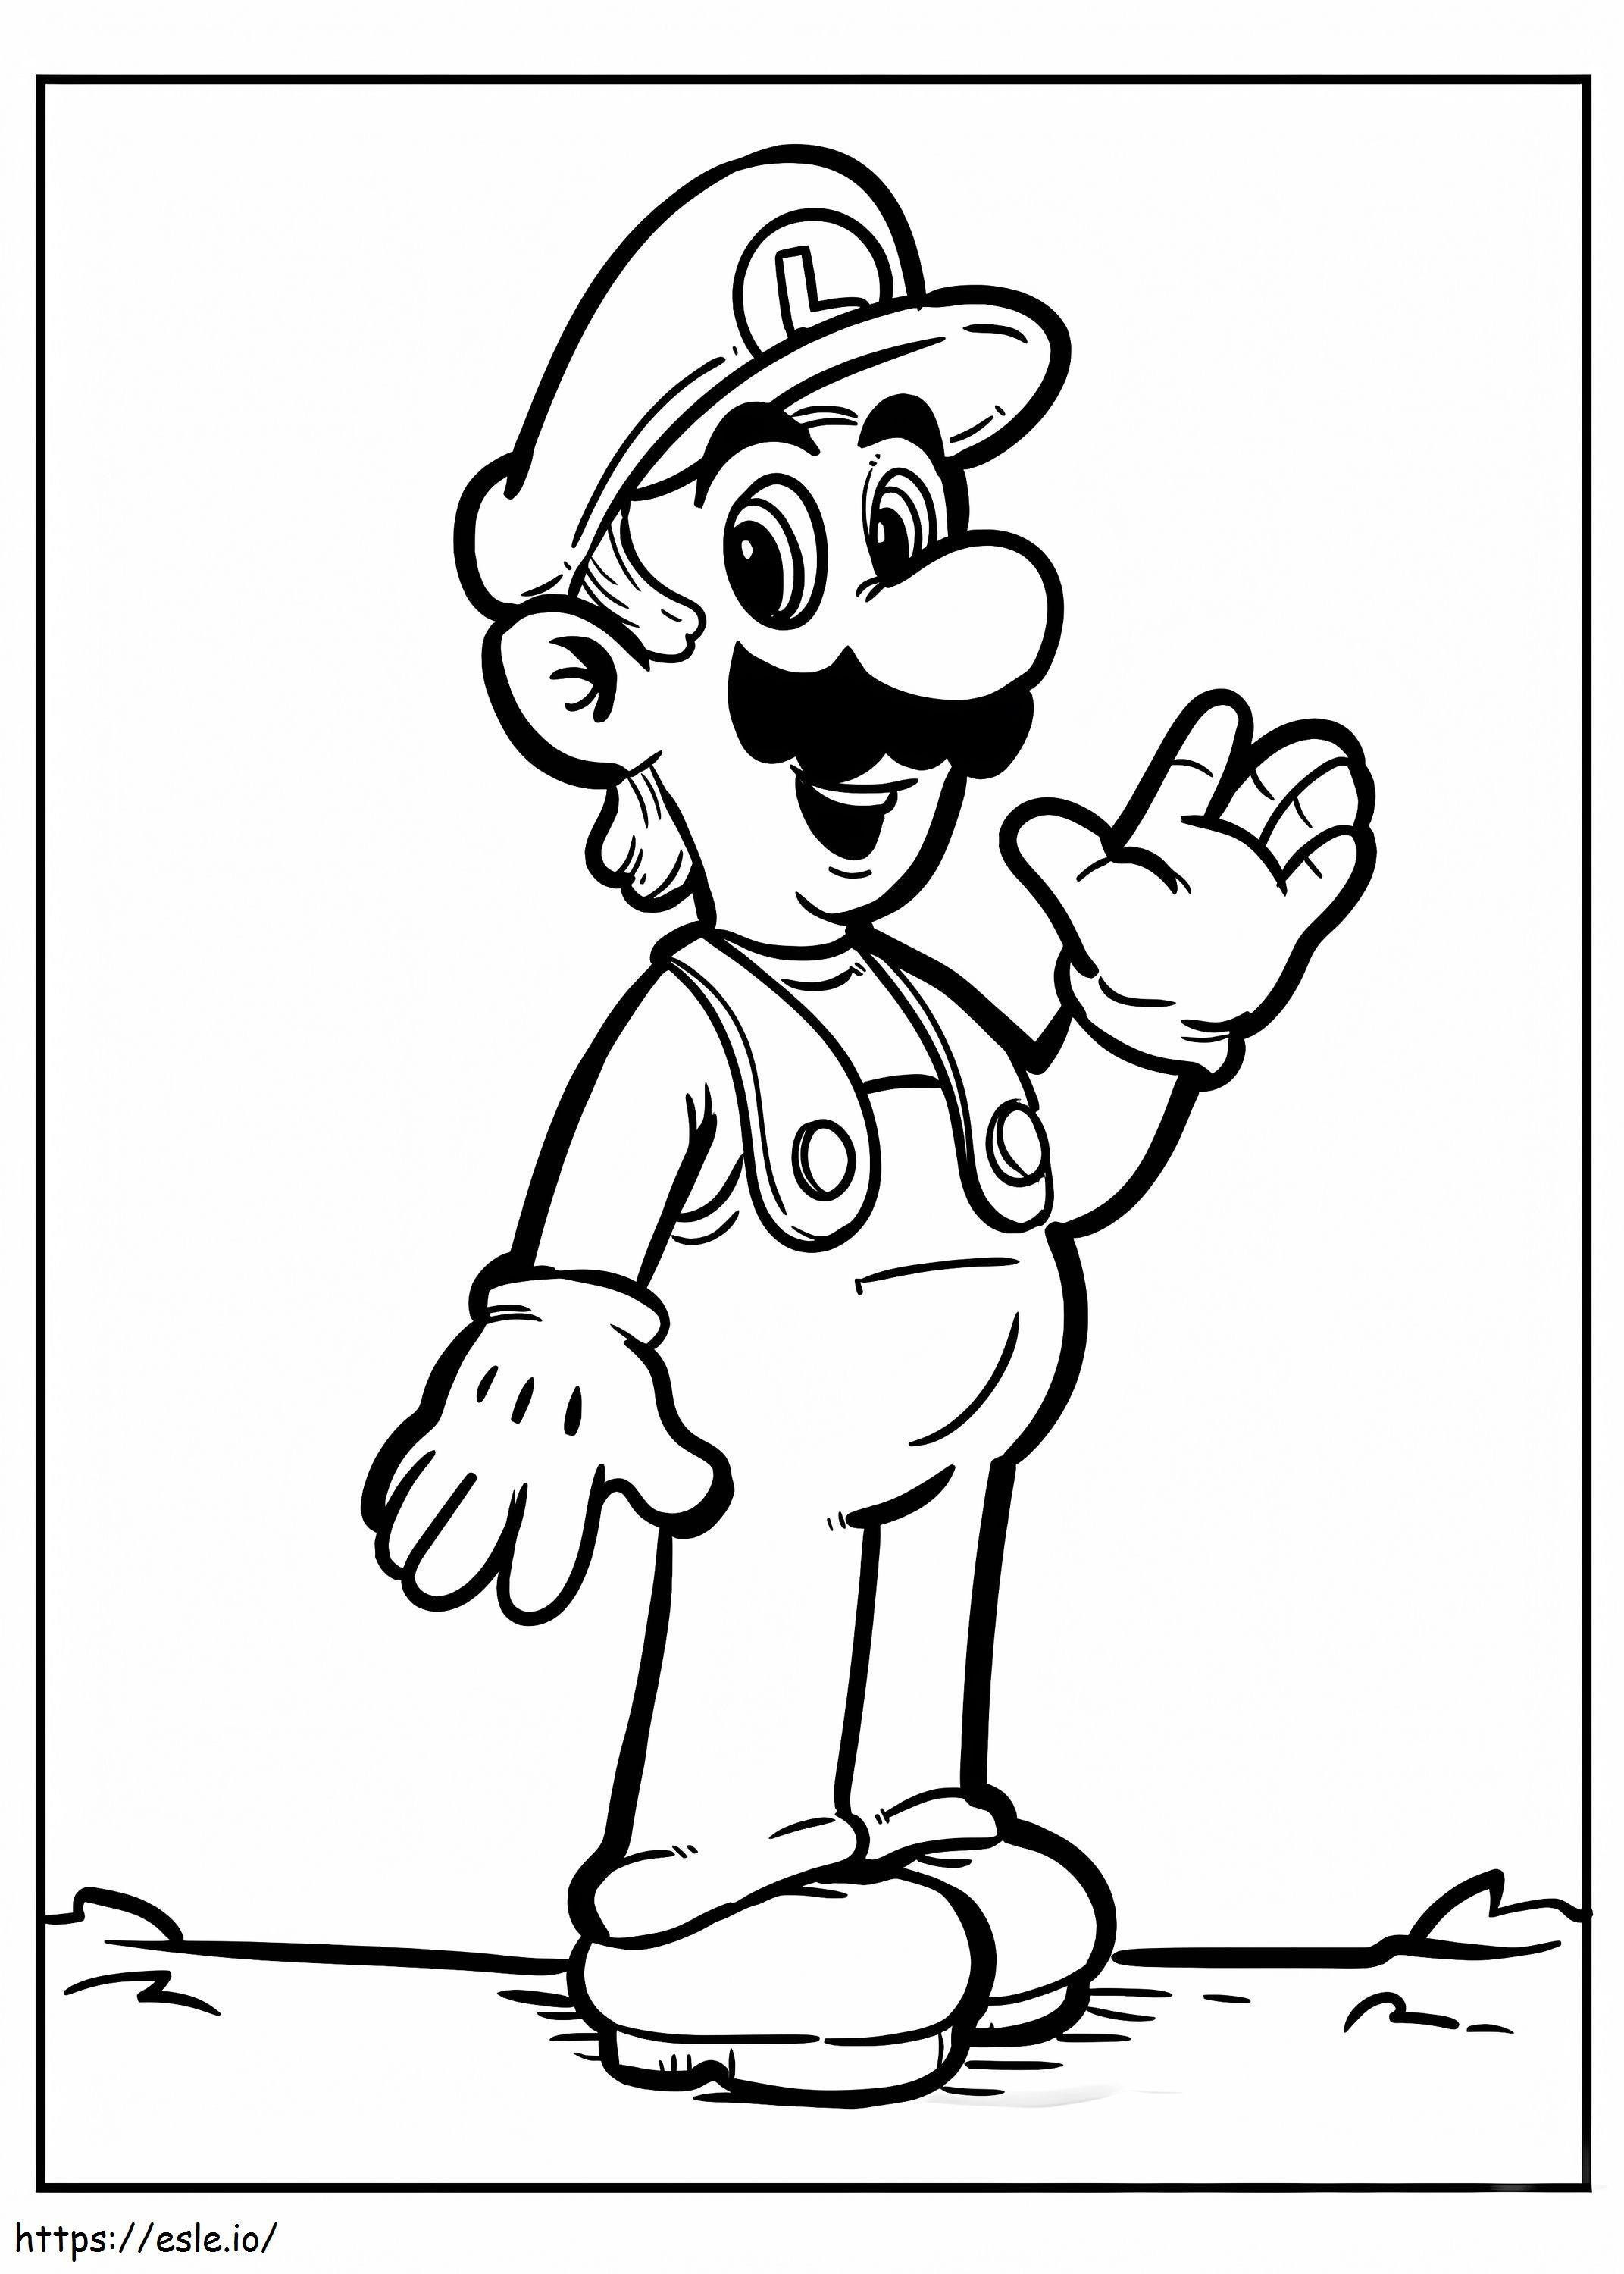 Luigi Simple coloring page